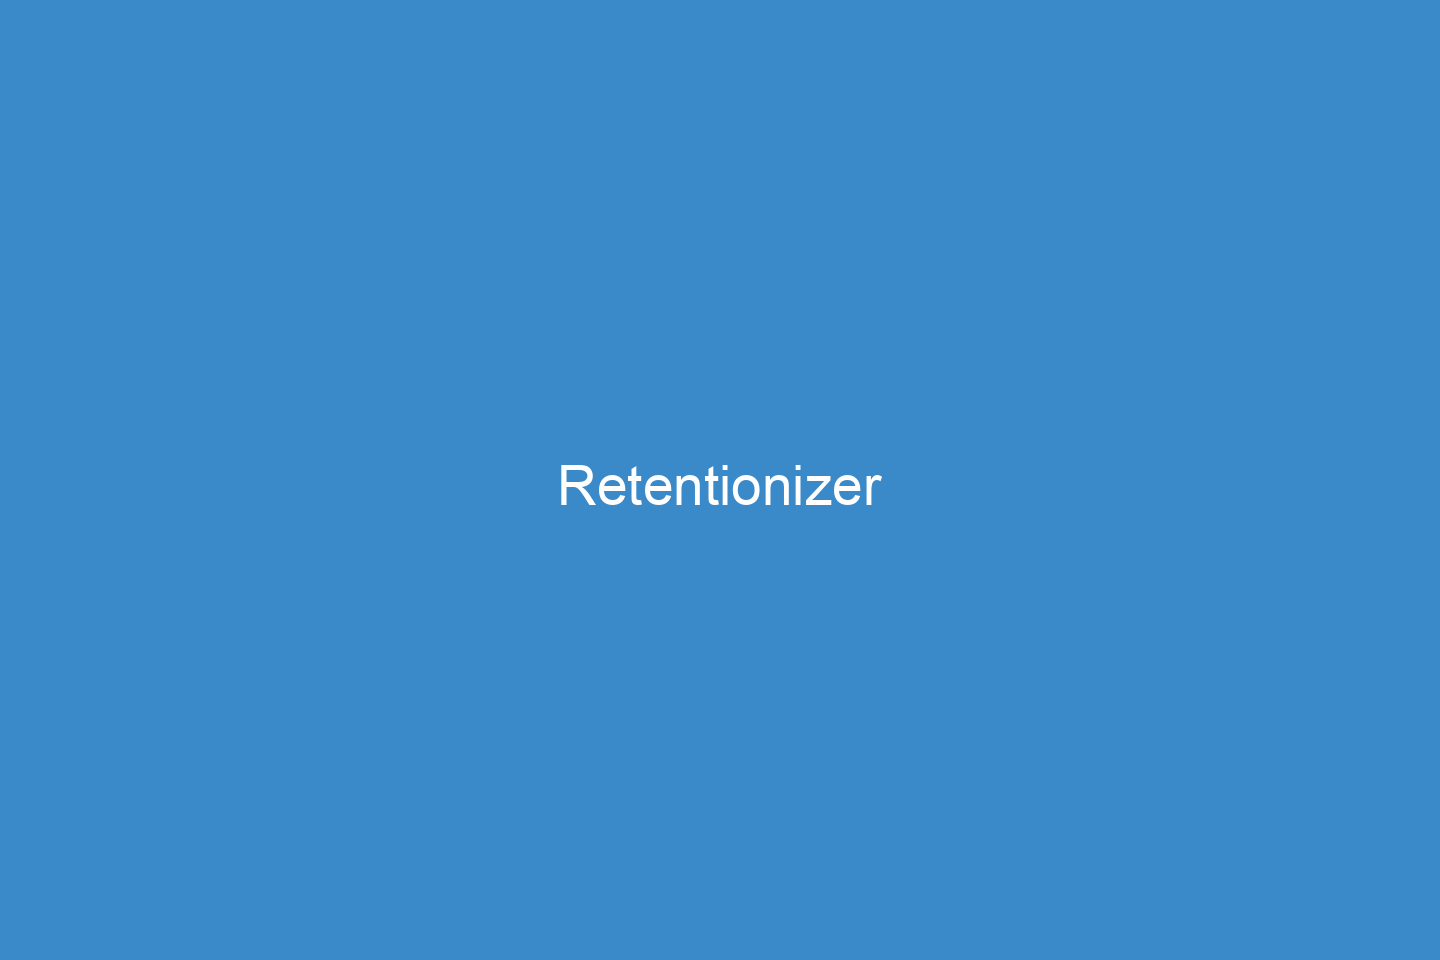 Retentionizer